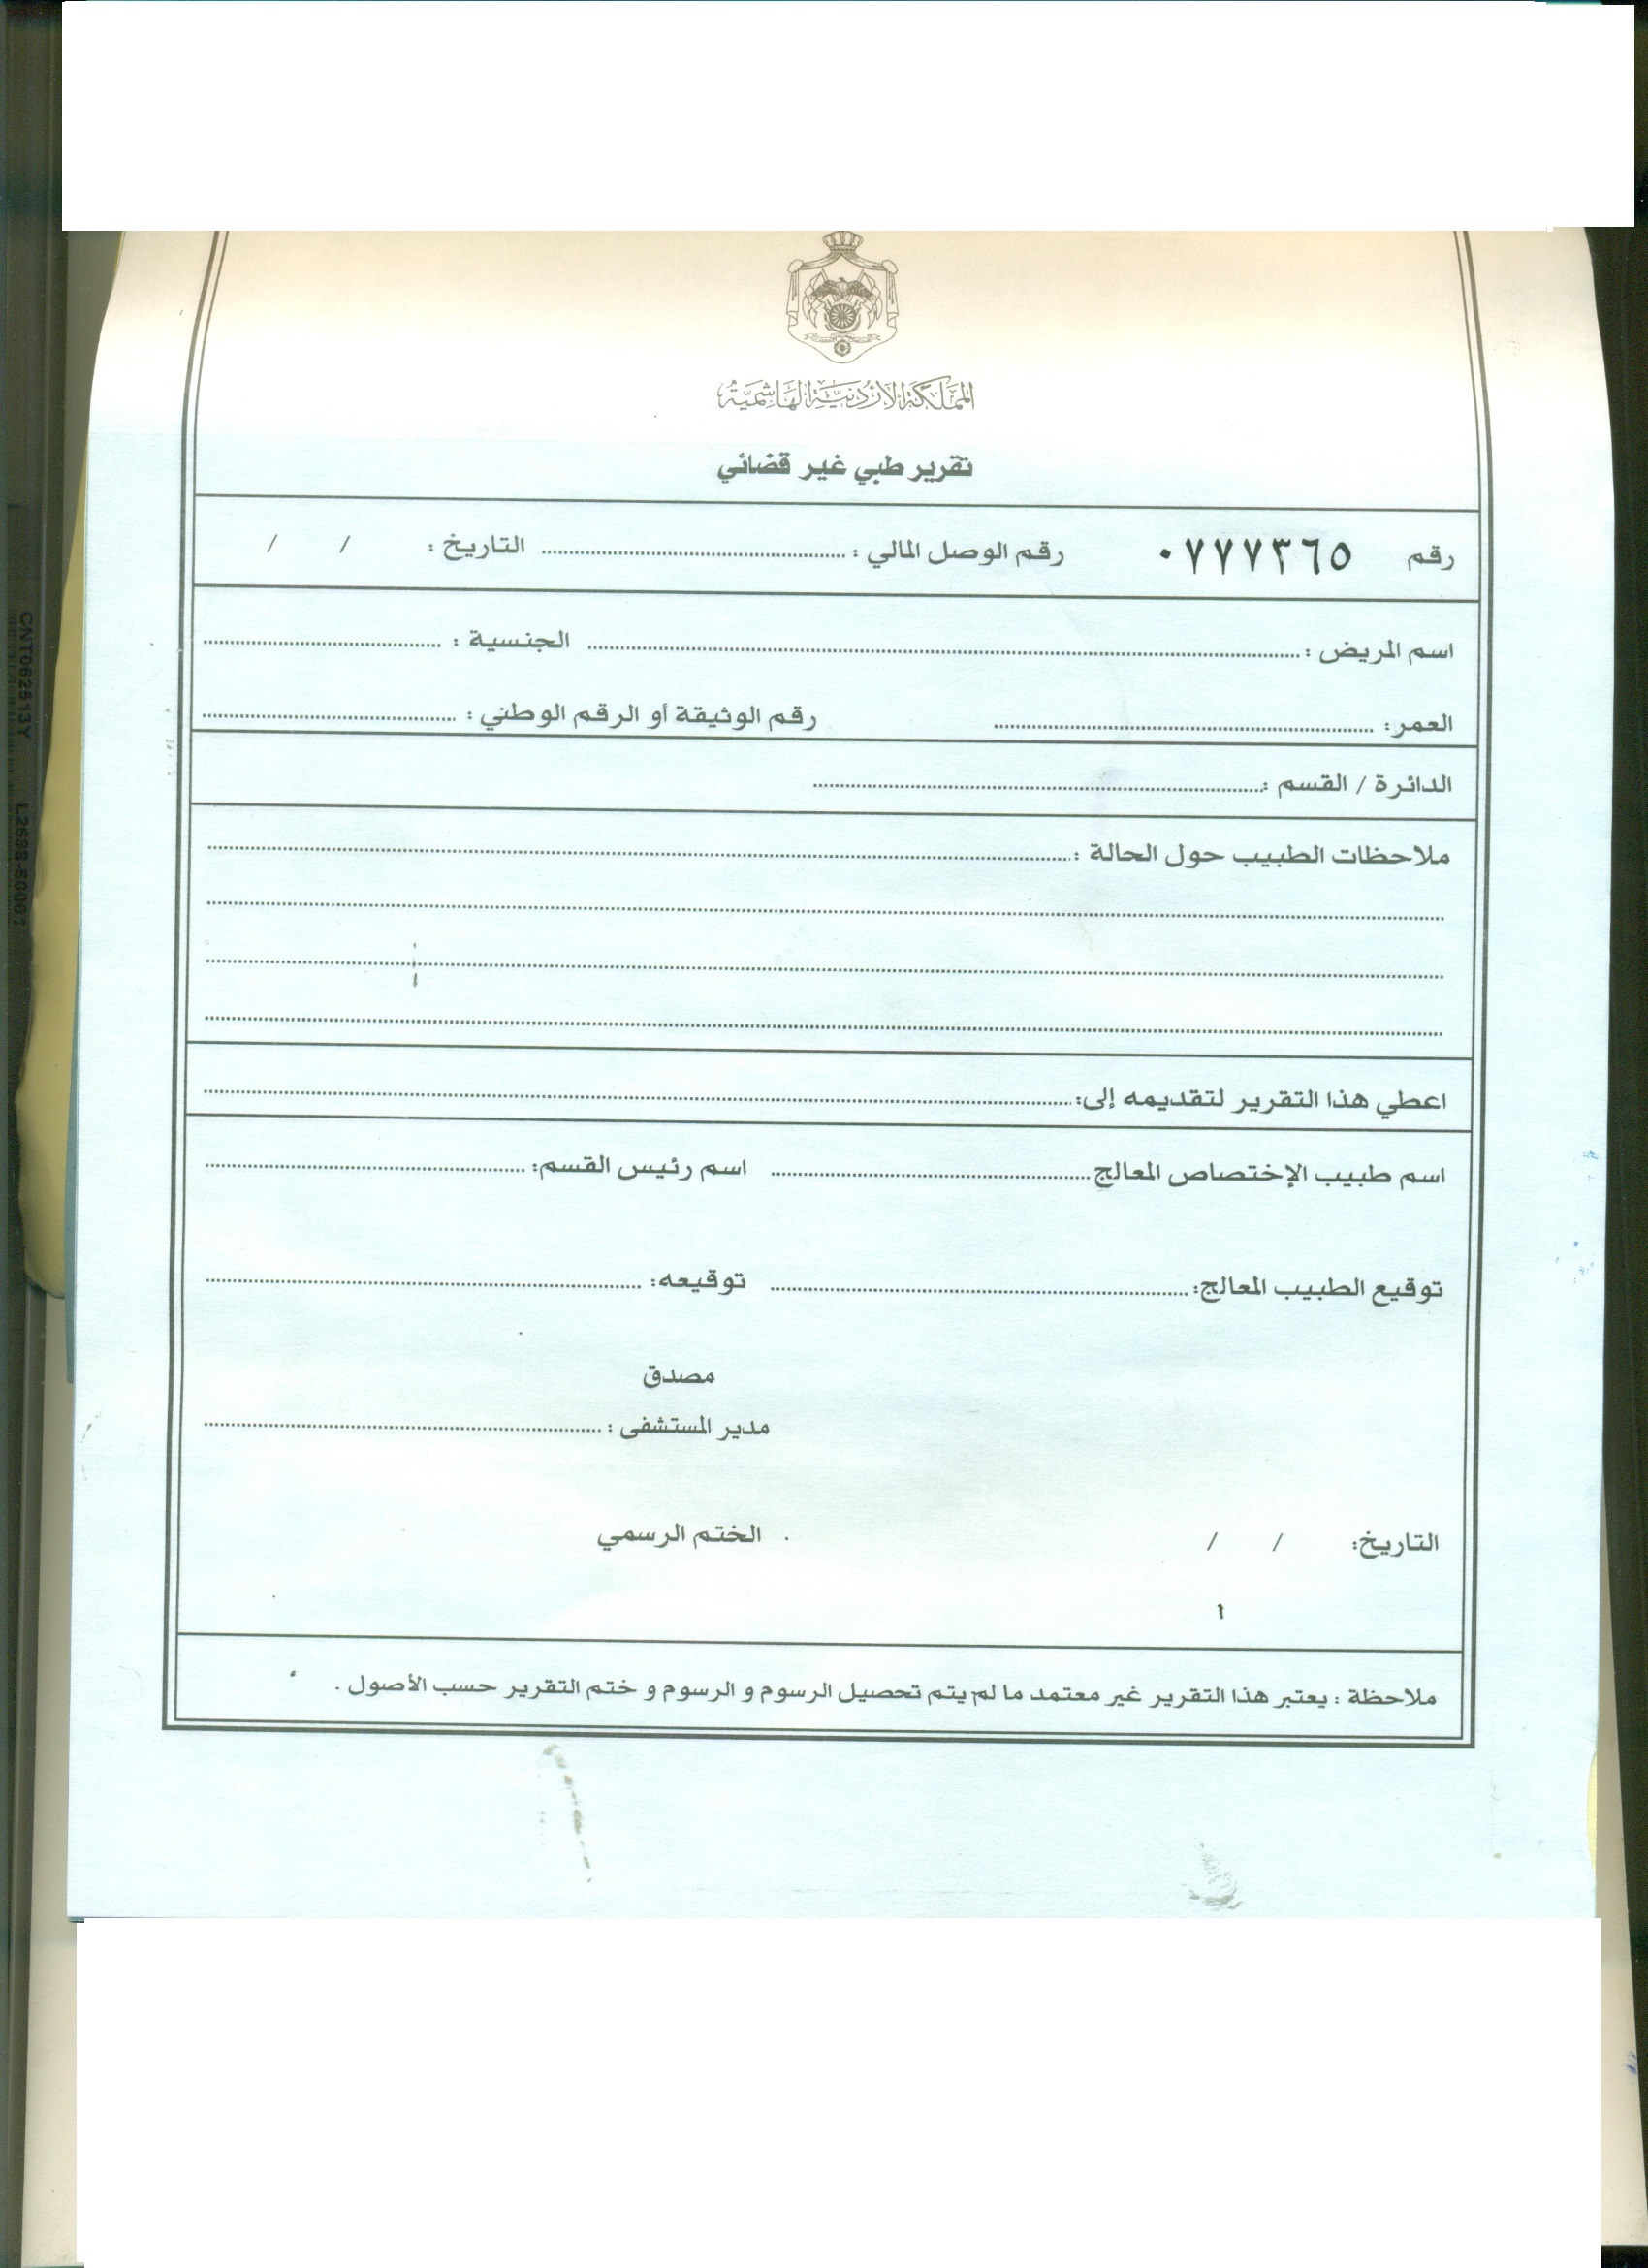 شهادة مرضية تقرير طبي مختوم من مستشفى حكومي مصري kahanan